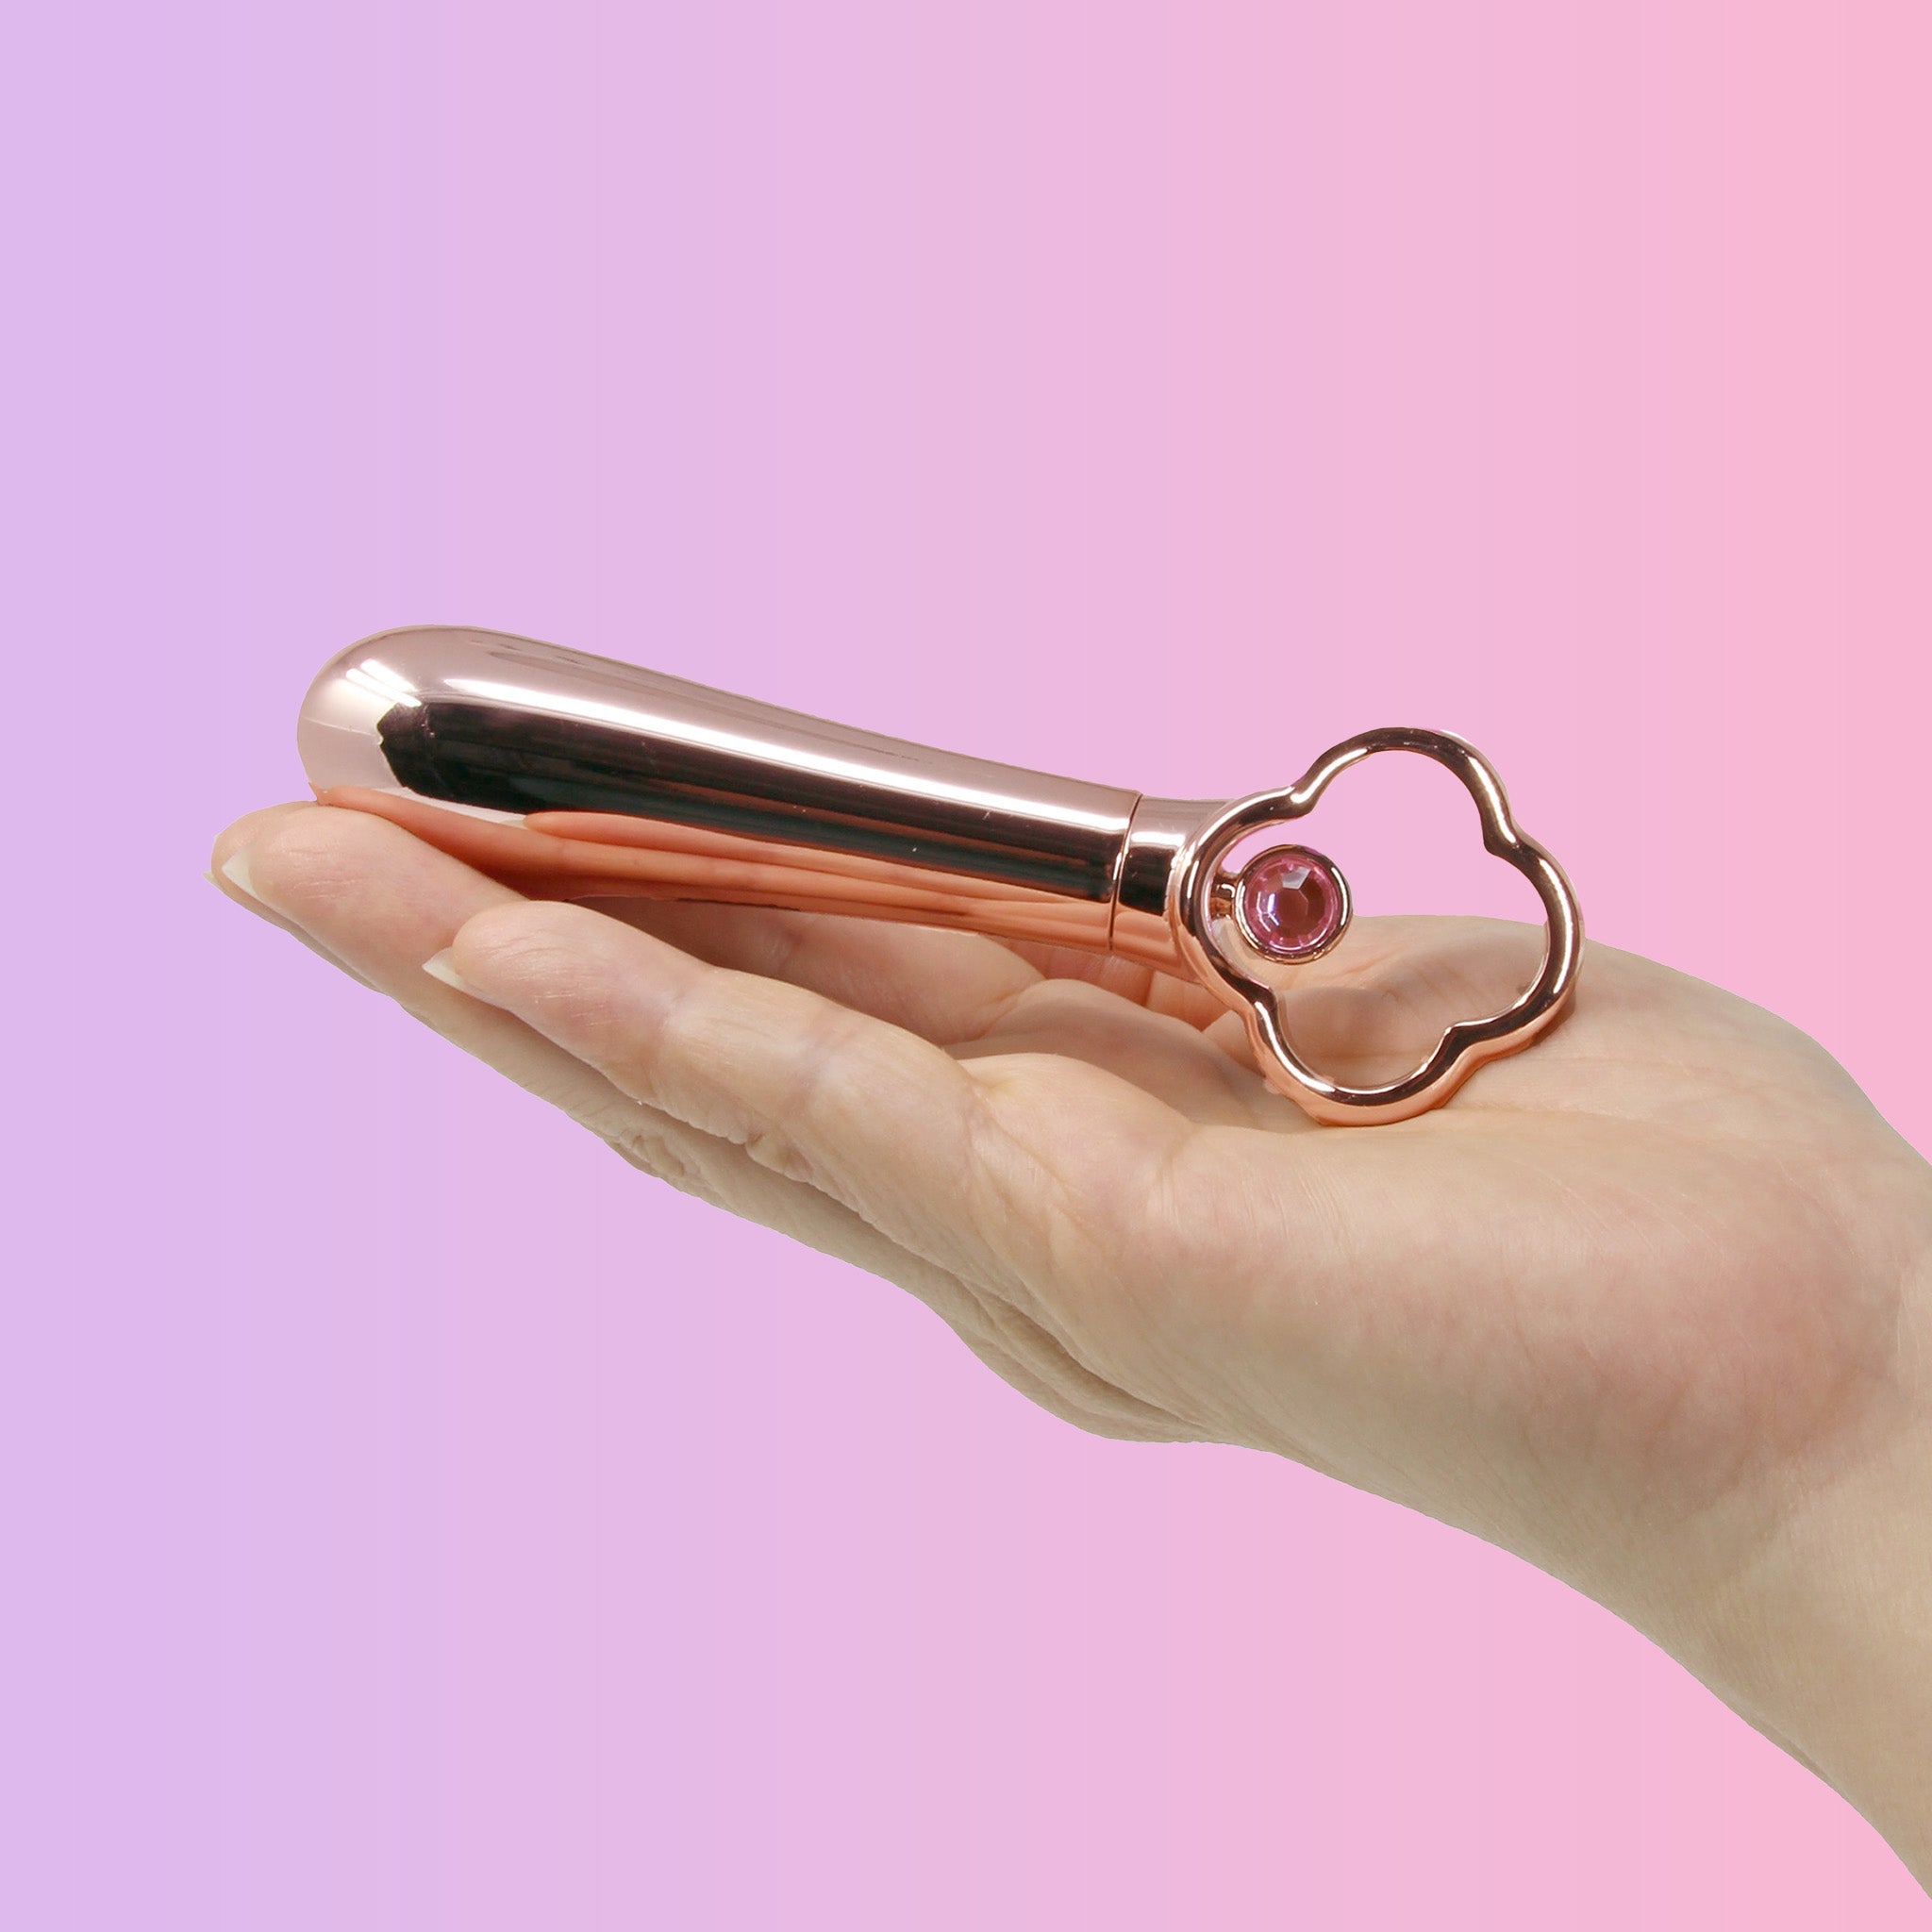 Gold Rechargeable Vibrating Bullet Vibrator Beginner Sex Toys for Women